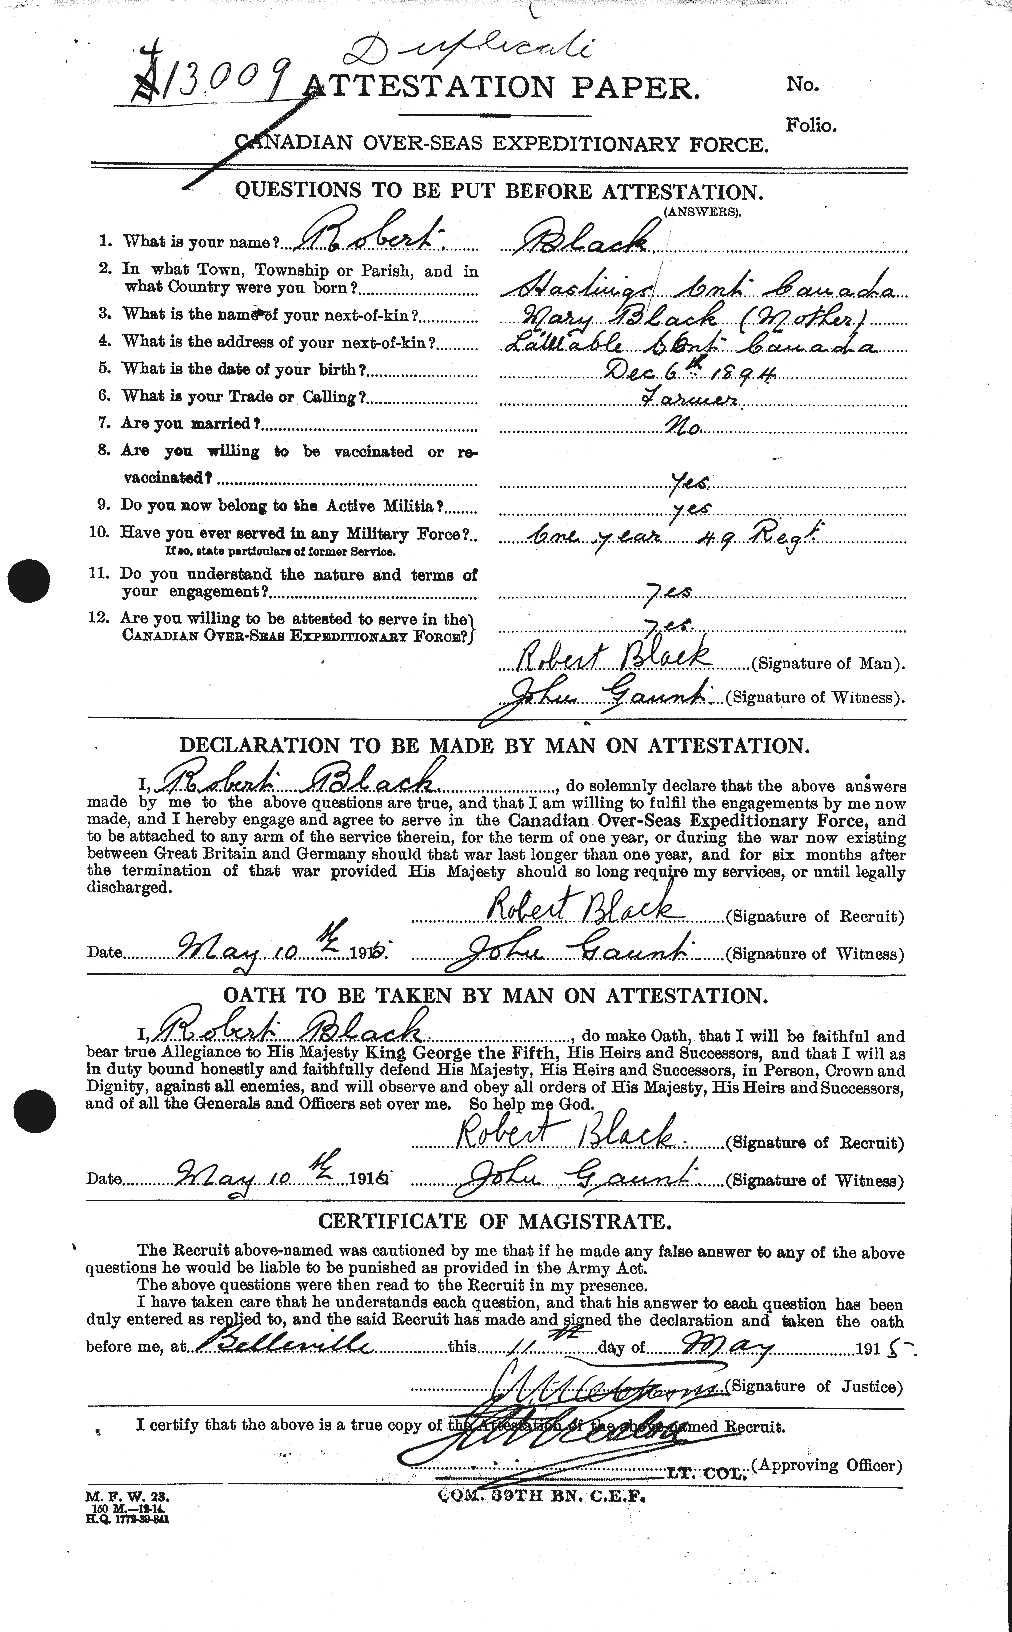 Dossiers du Personnel de la Première Guerre mondiale - CEC 247578a